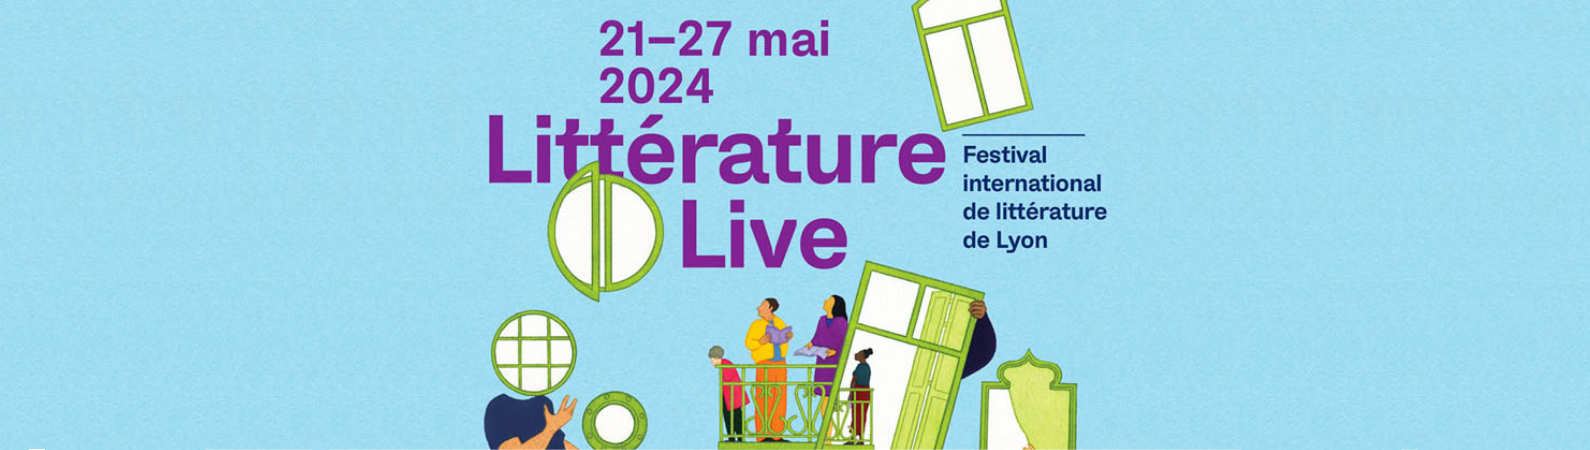 Participer au Litterature live festival - nouvelle fenêtre